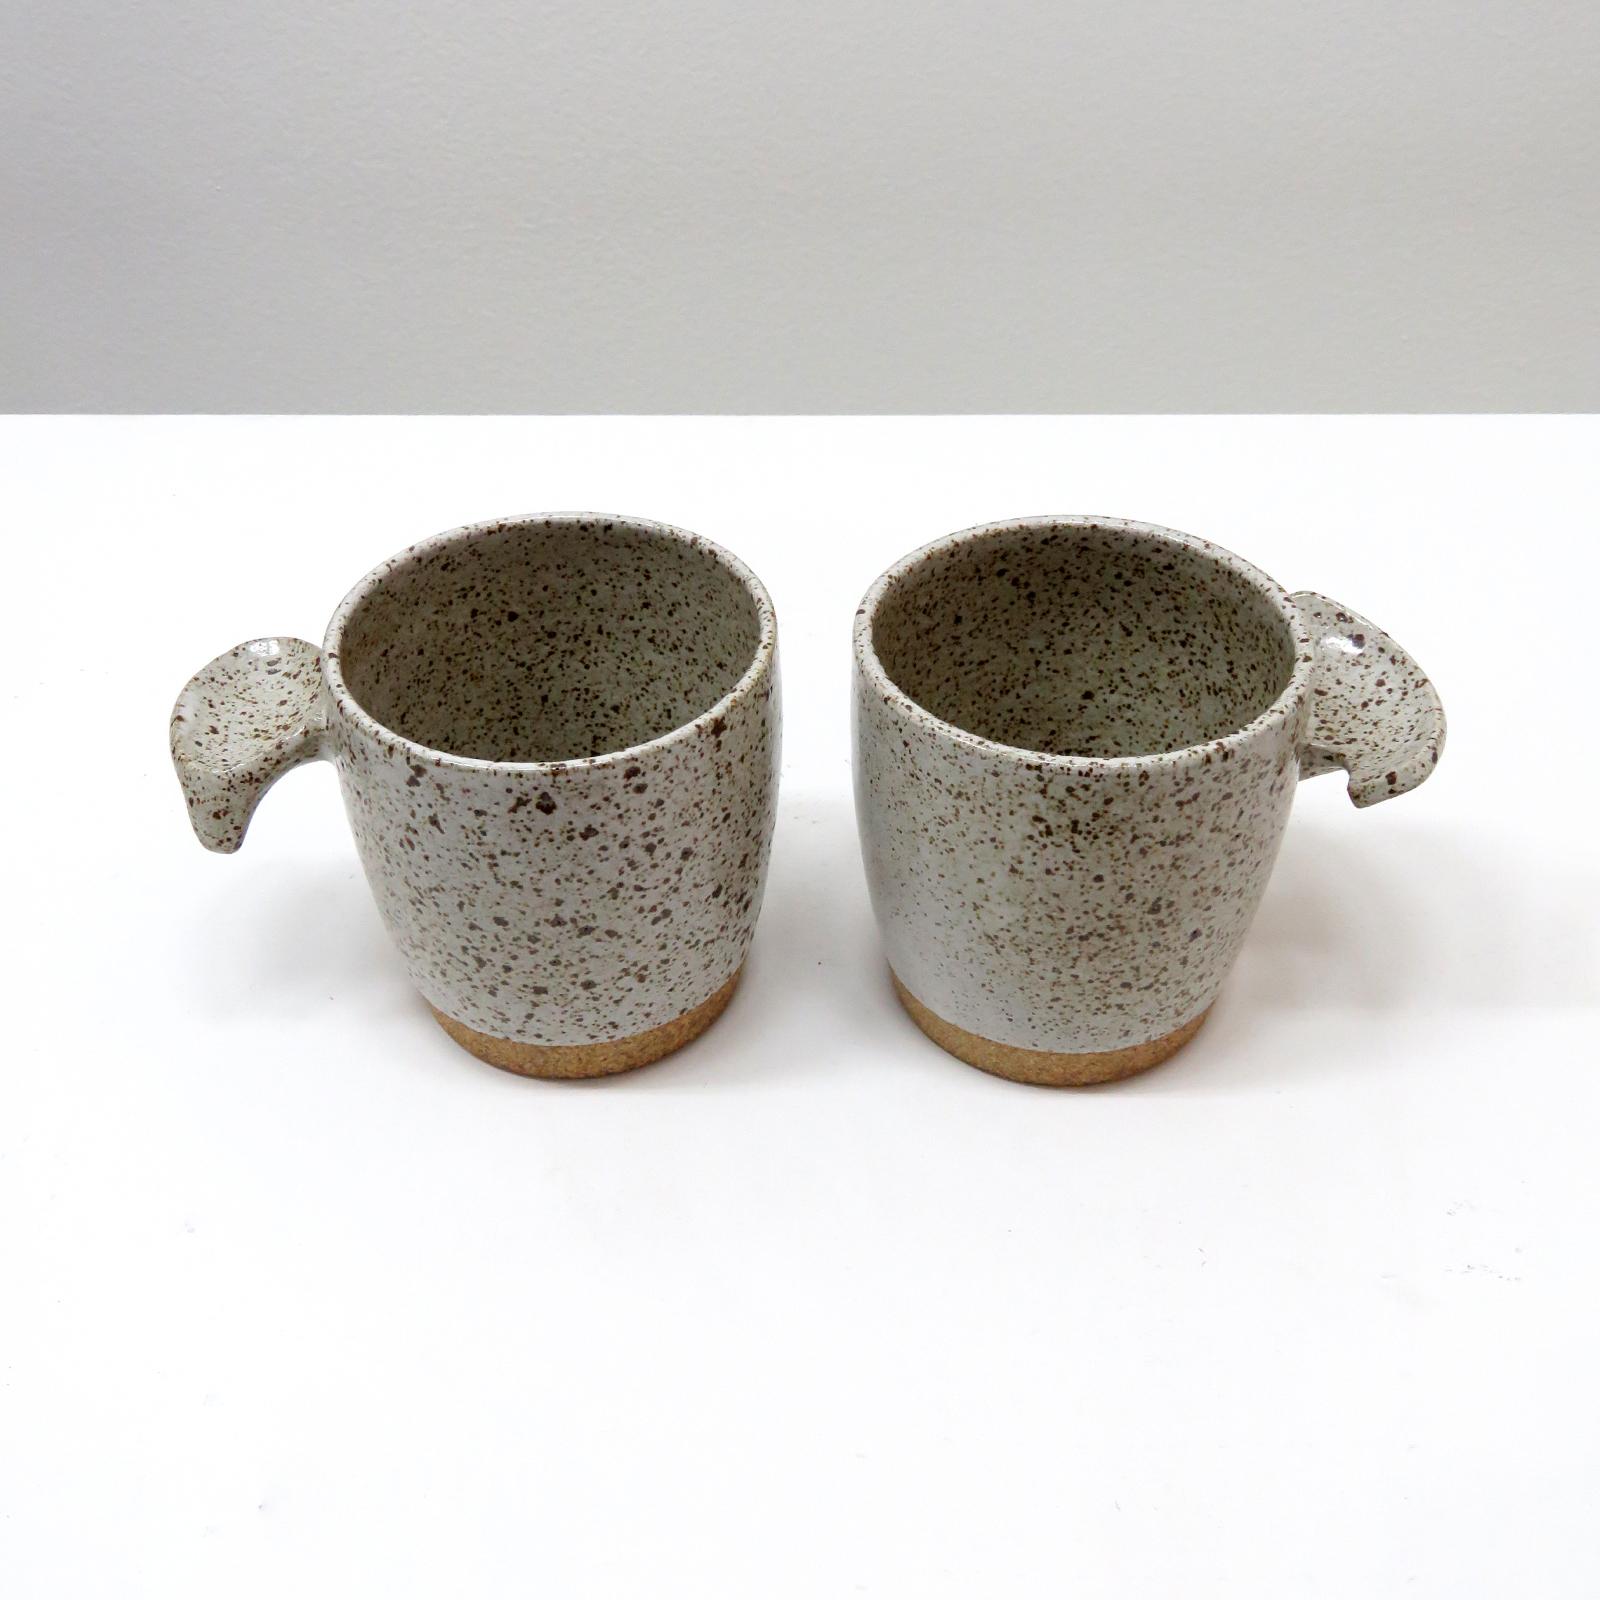 wunderbare 'Fin'-Tassen, handgefertigt vom Keramiker Jed Farlow aus Los Angeles für Farlow Design. Hochgebranntes Steingut mit mattweiß gesprenkelter Glasur. Diese einzigartigen Tassen wurden mit einem menschenzentrierten Ansatz entwickelt und